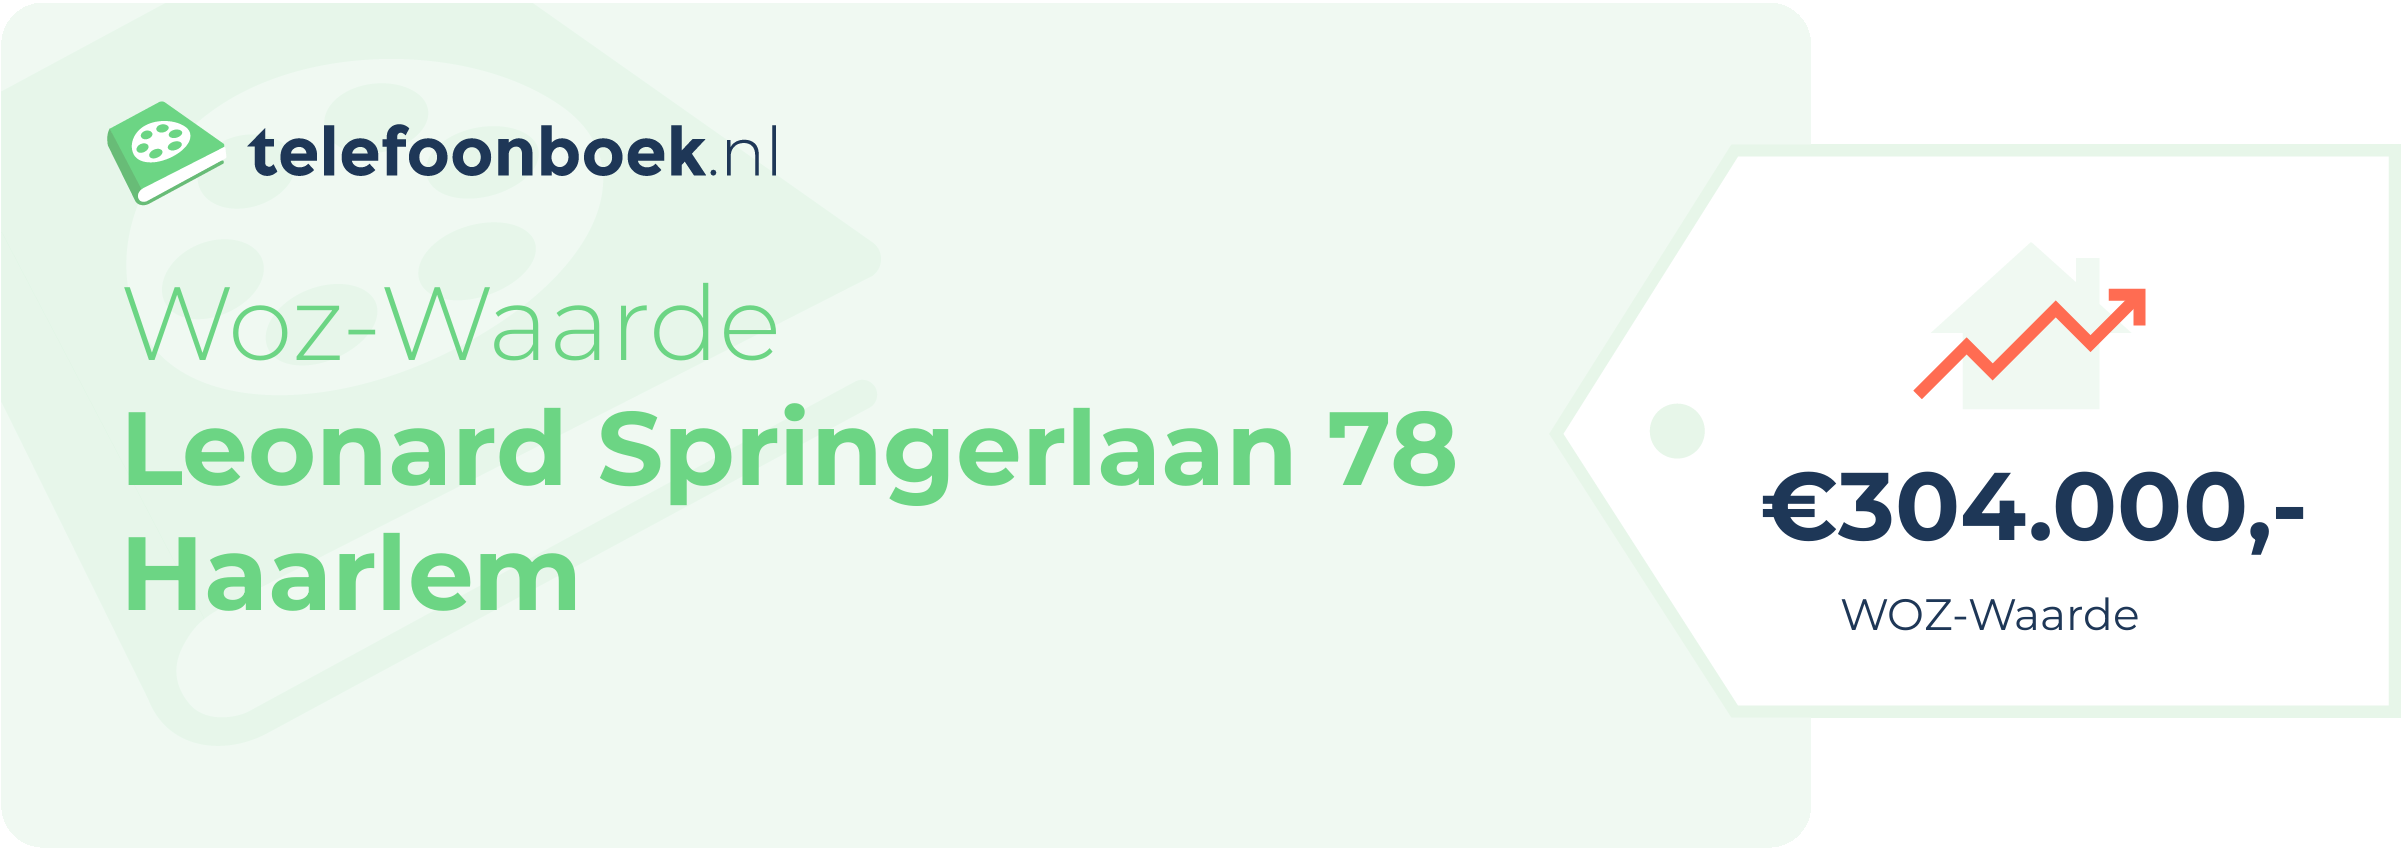 WOZ-waarde Leonard Springerlaan 78 Haarlem